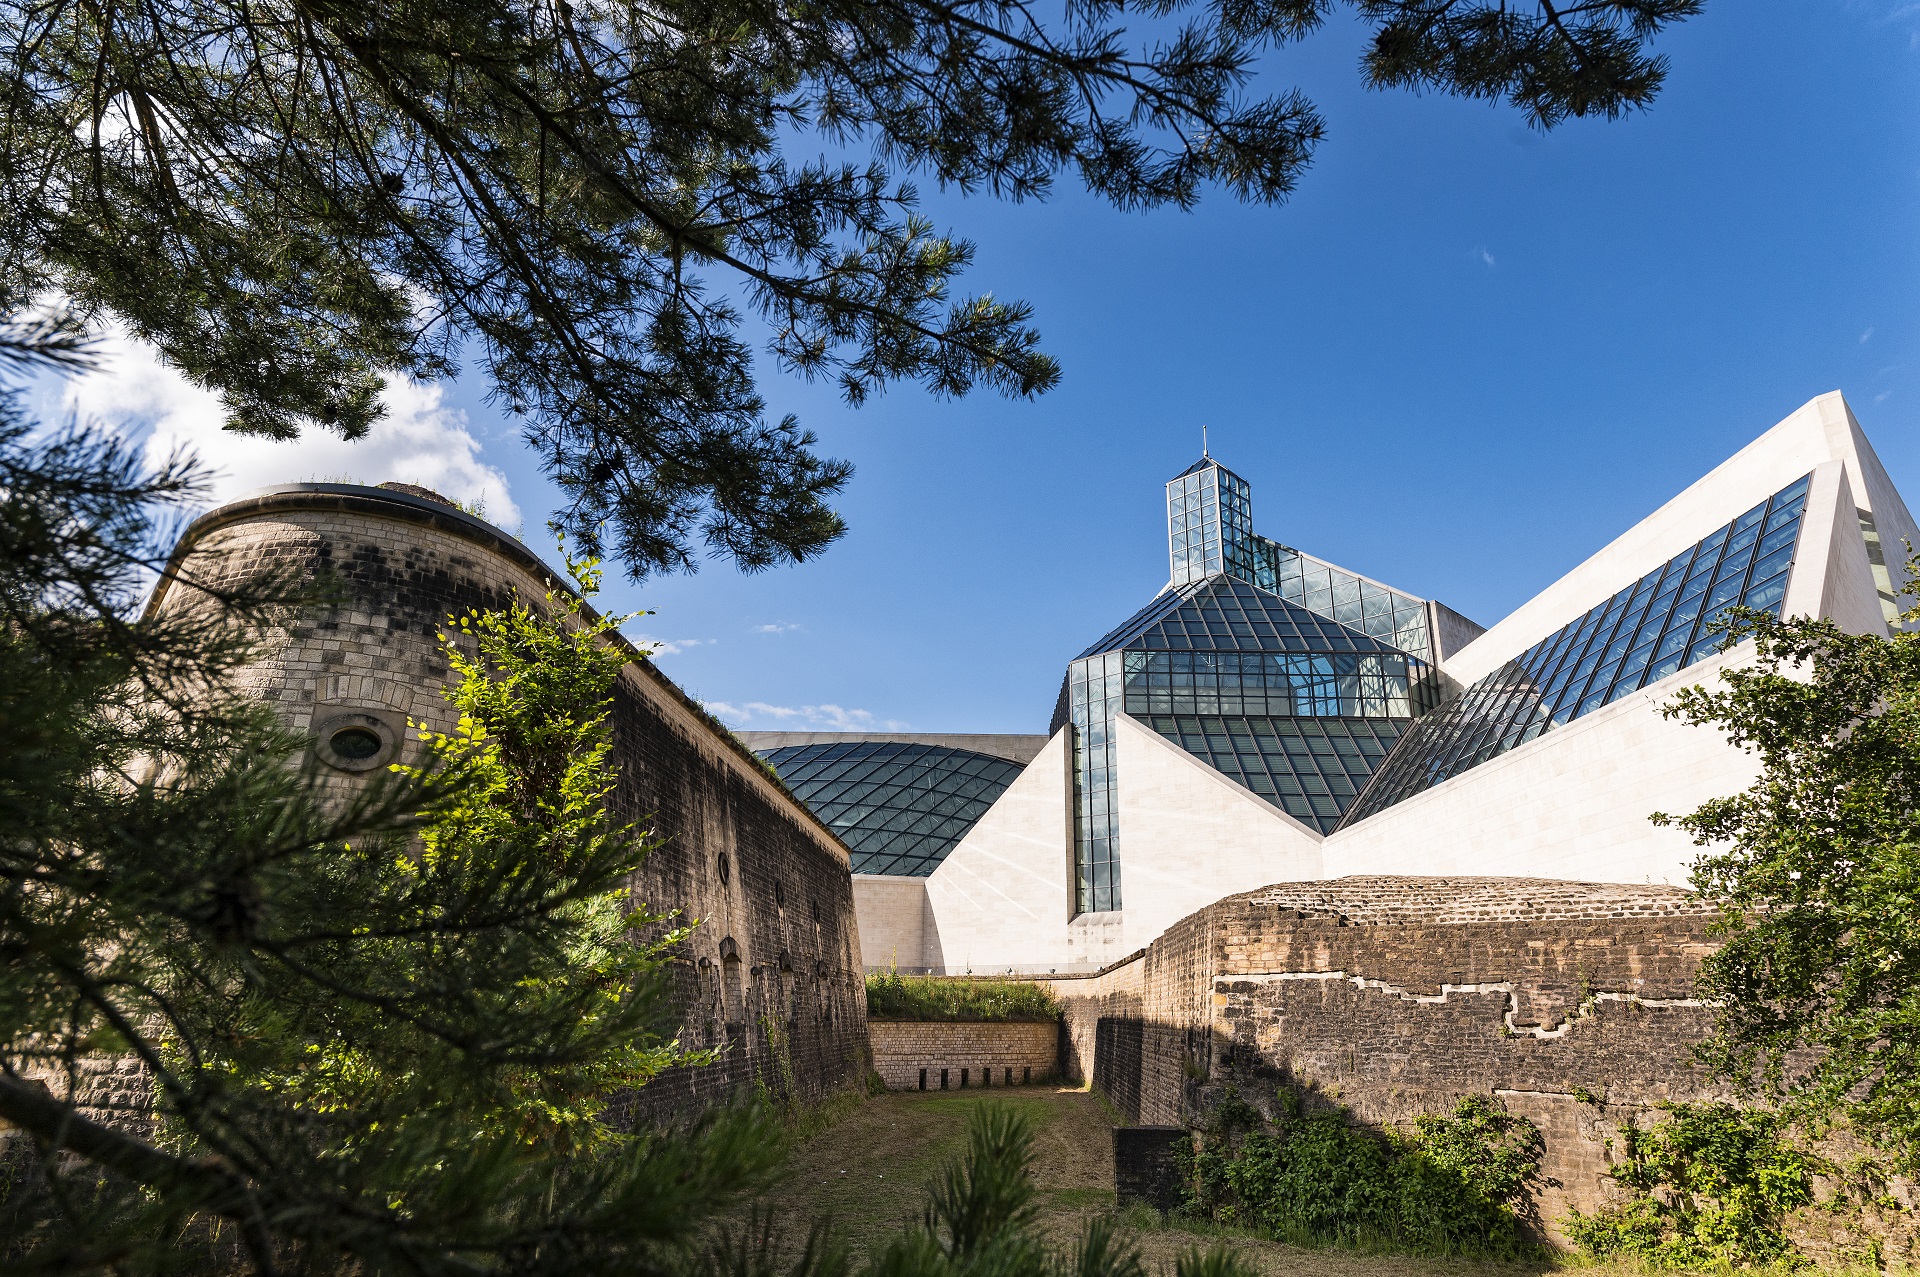 L'arrière du Musée d'art Mudam avec le Fort Thüngen et l'Oark "Dräi Eechelen". Le soleil brille et le ciel est bleu.